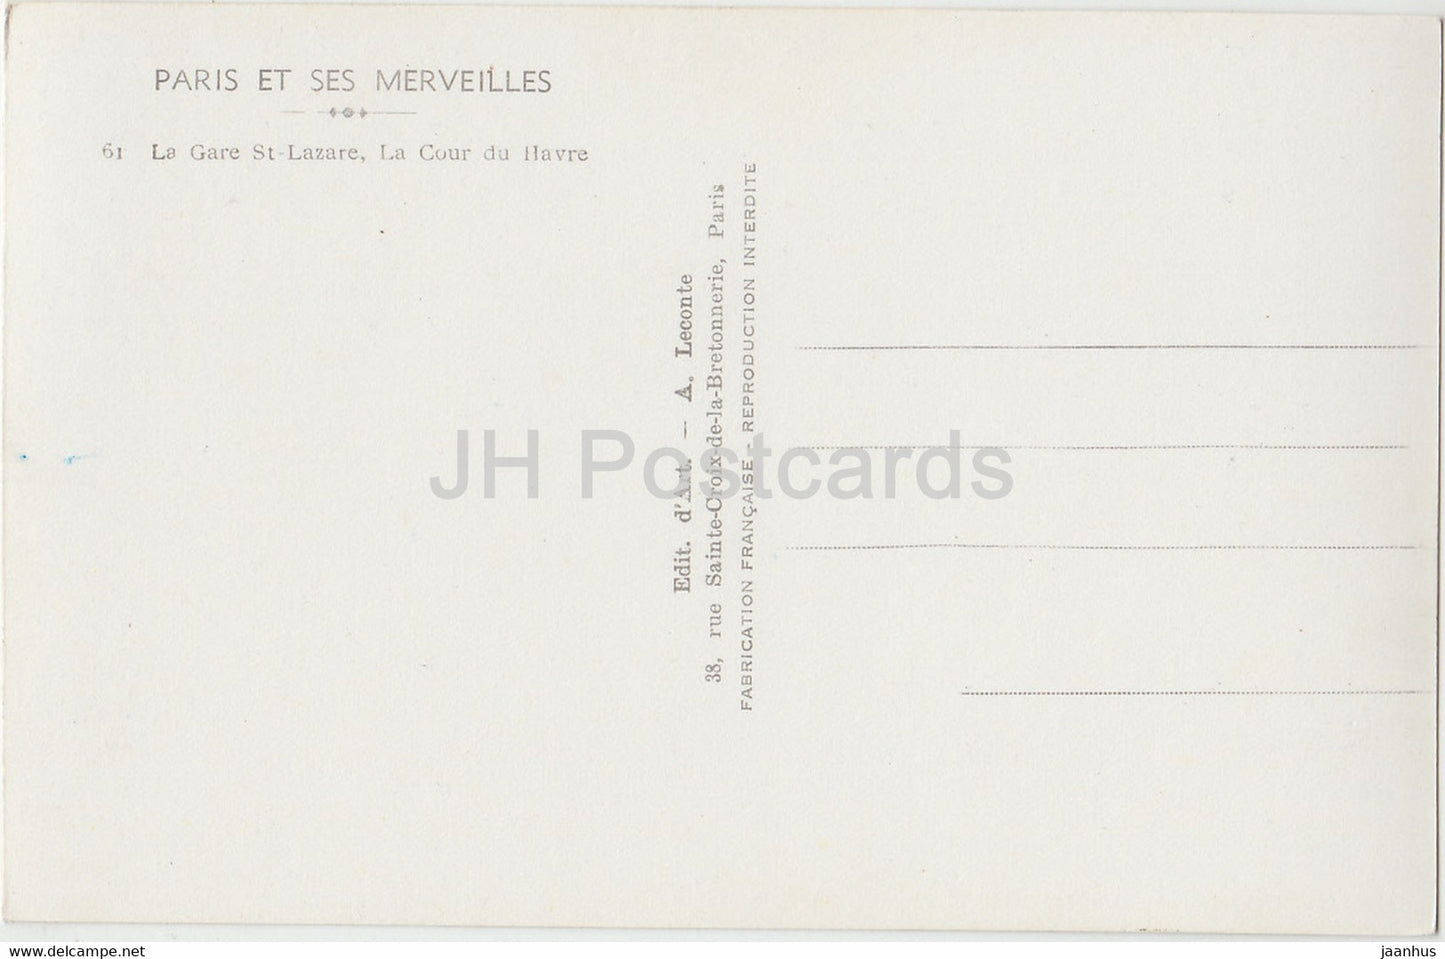 Paris Et Ses Merveilles – La Gare St Lazare – La Cour du Havre – altes Auto – 61 – alte Postkarte – Frankreich – unbenutzt